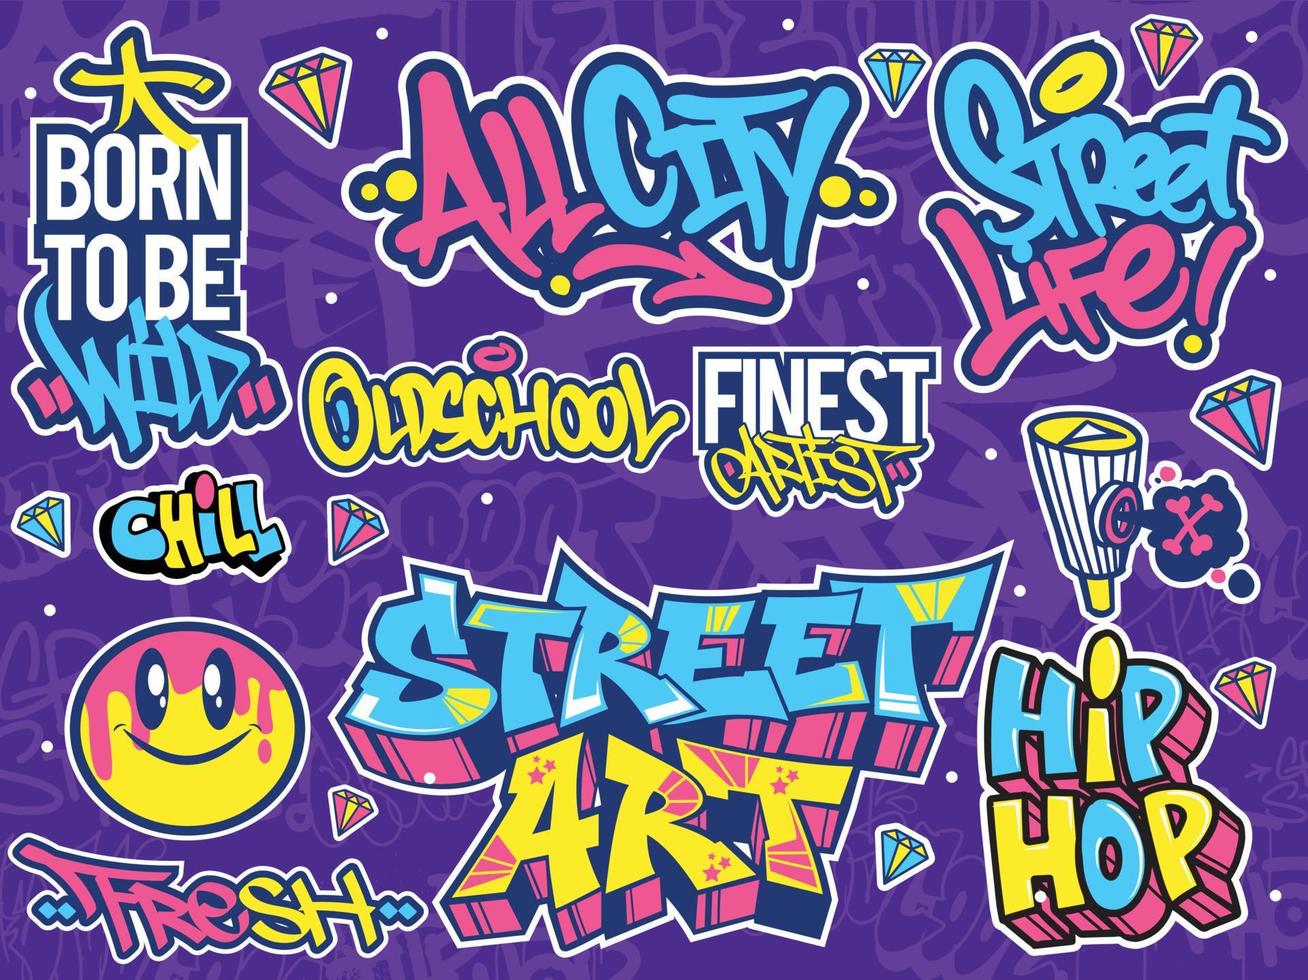 un conjunto de pegatinas de graffiti coloridas o vibrantes. tema de arte callejero, estilo urbano para el diseño de camisetas, diseño de graffiti para papel pintado, arte mural o diseños de arte impreso. vector